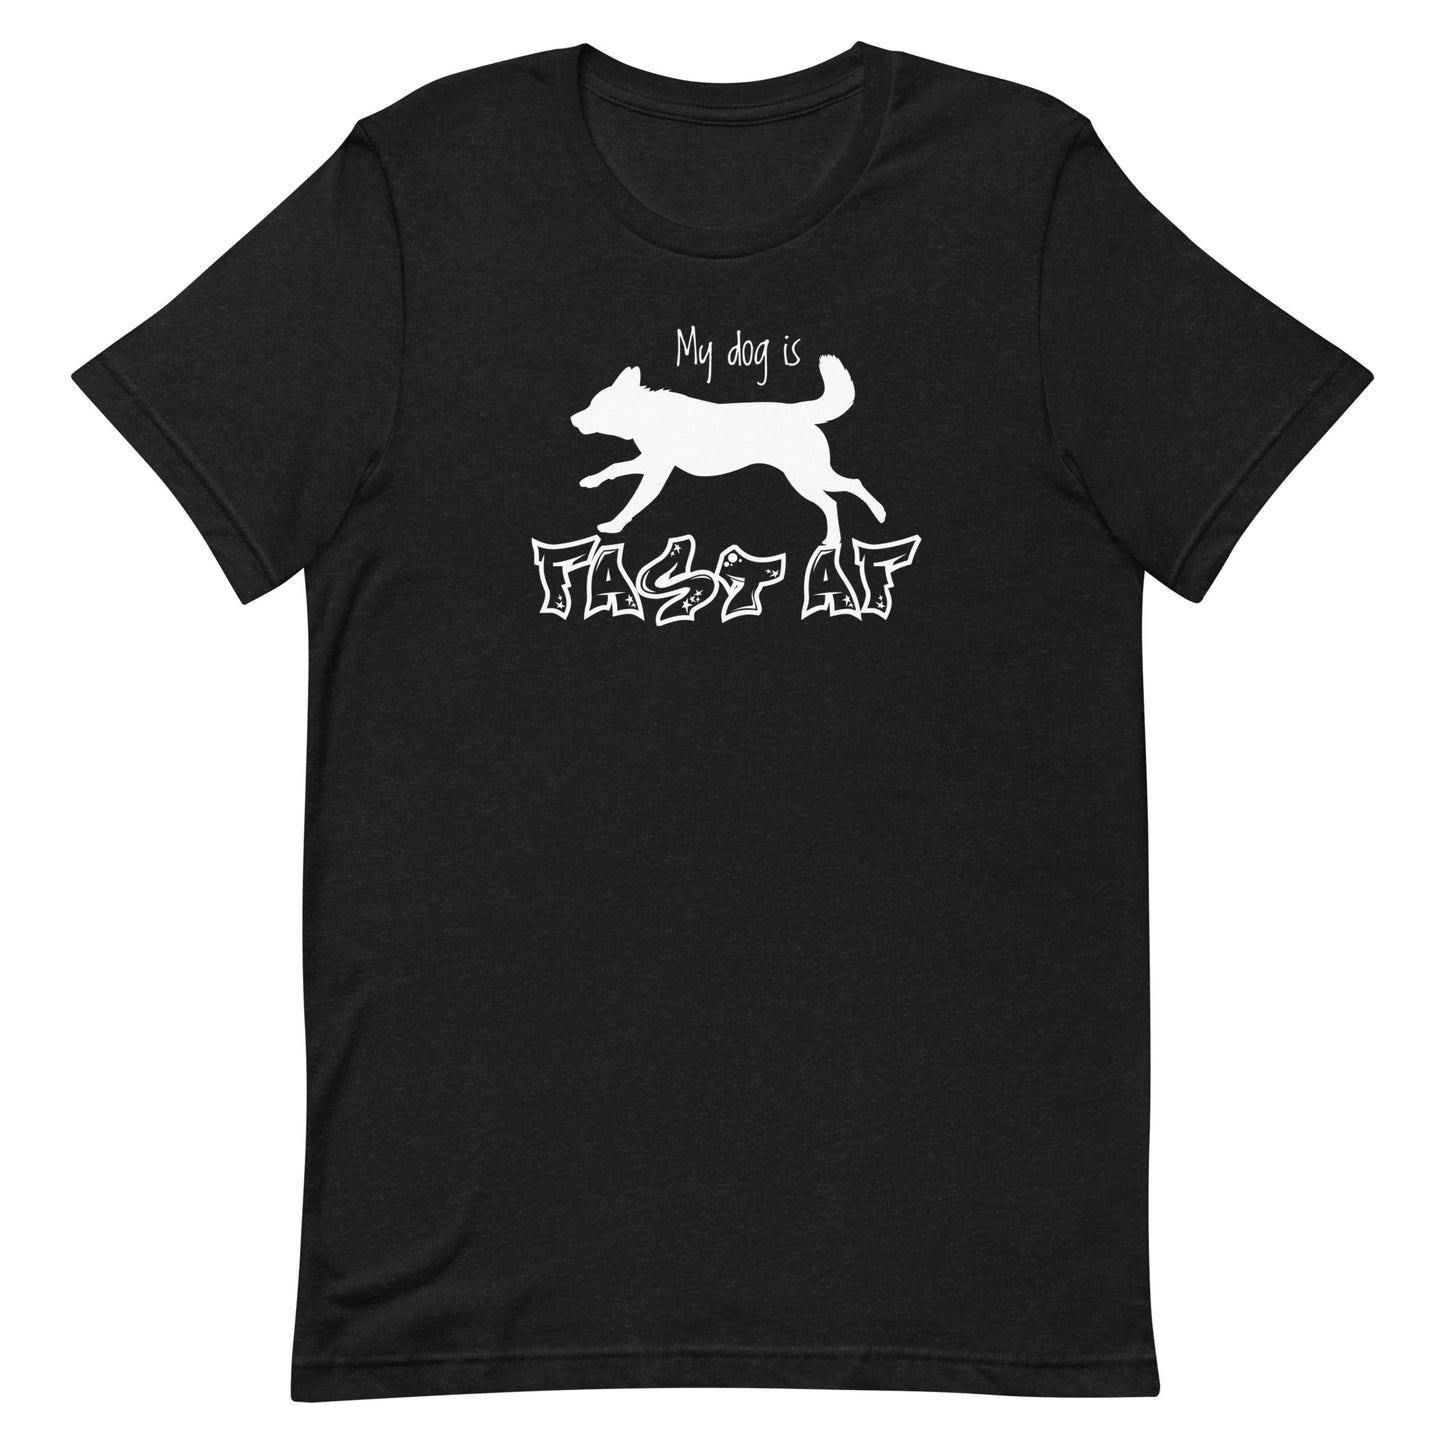 FAST AF - CATTLE DOG - Unisex t-shirt